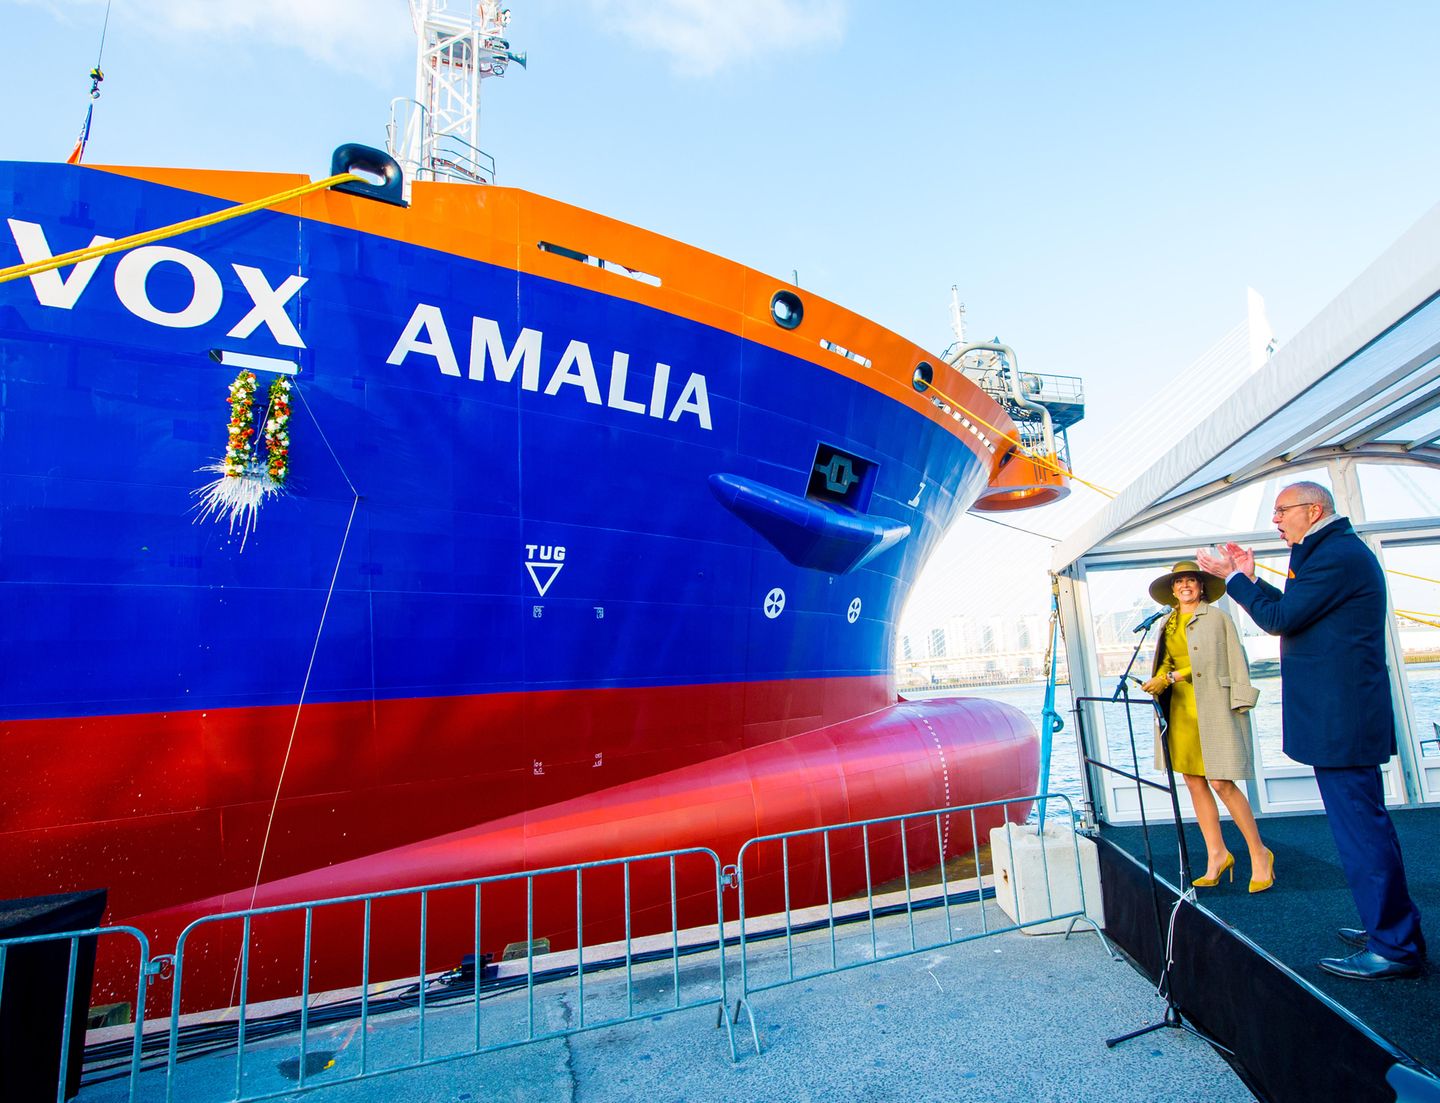 Und das ist der Grund für Máximas Strahlen, sie tauft nämlich im Hafen von Rotterdamm ein großes Baggerschiff auf den Namen "Vox Amalia", dem ihrer ältesten Tochter Prinzessin Amalia.